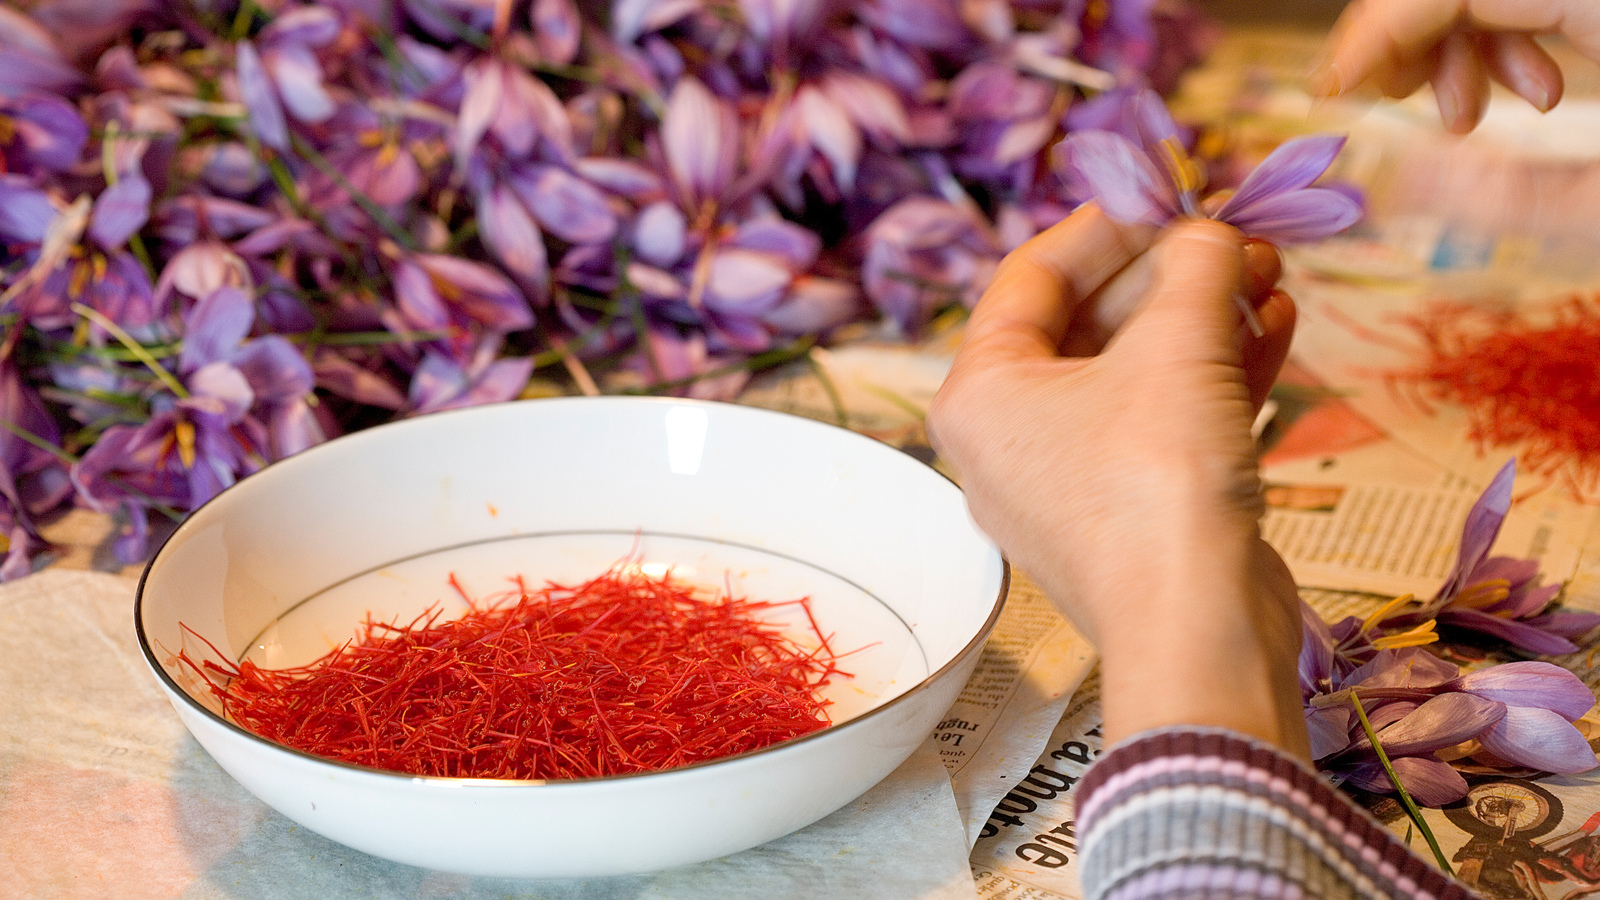 Saffron là gì và có tác dụng như thế nào đối với sức khỏe? Hãy cùng GenVita tìm hiểu kỹ hơn về saffron trong bài viết này bạn nhé!